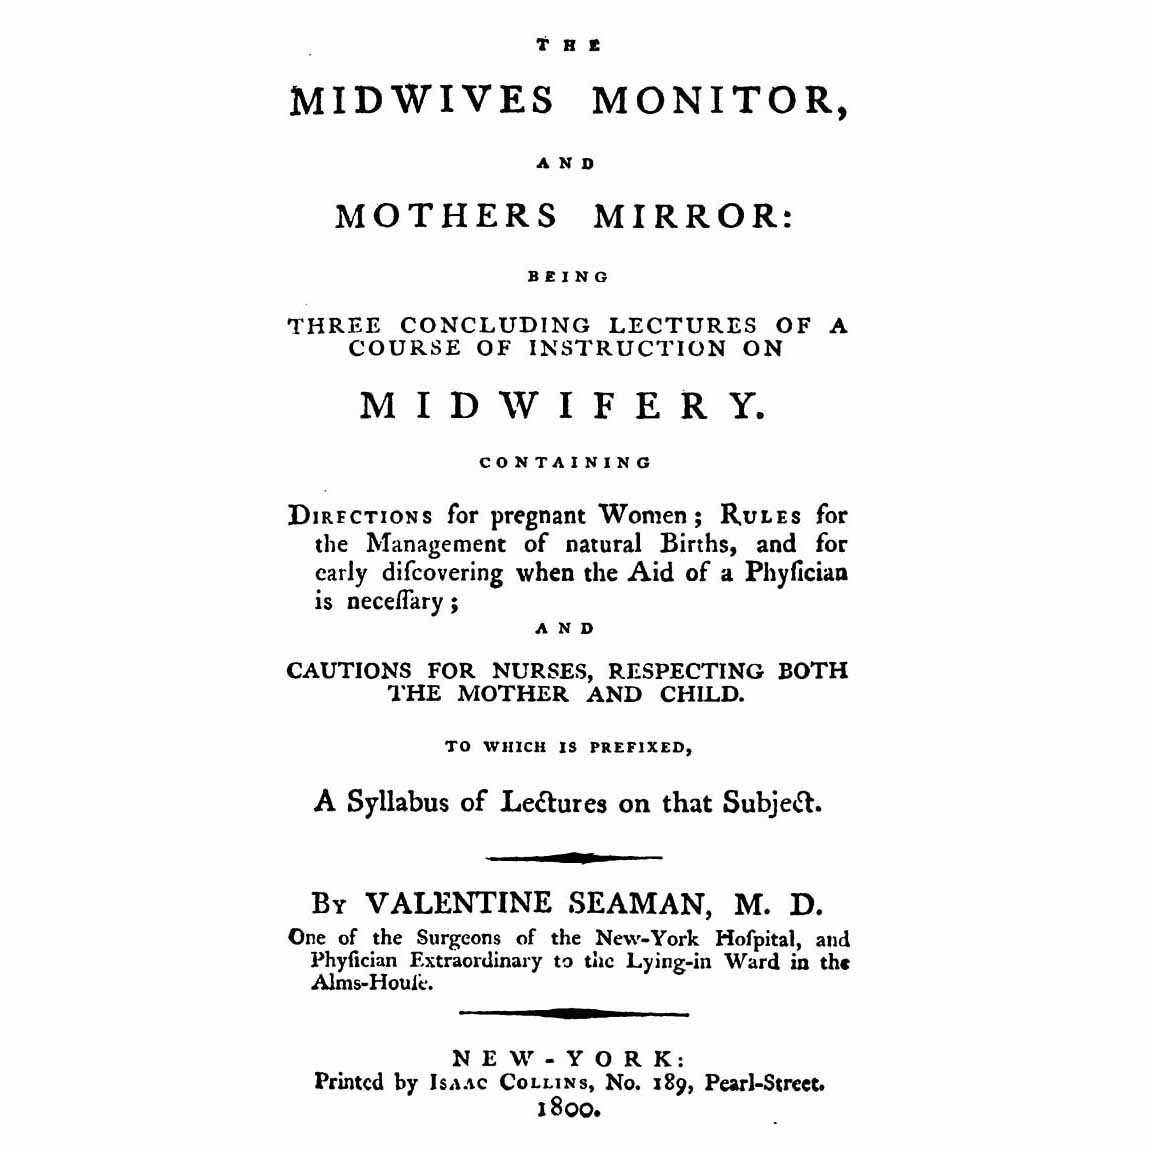 1800-SEAMAN-Midwives Monitor